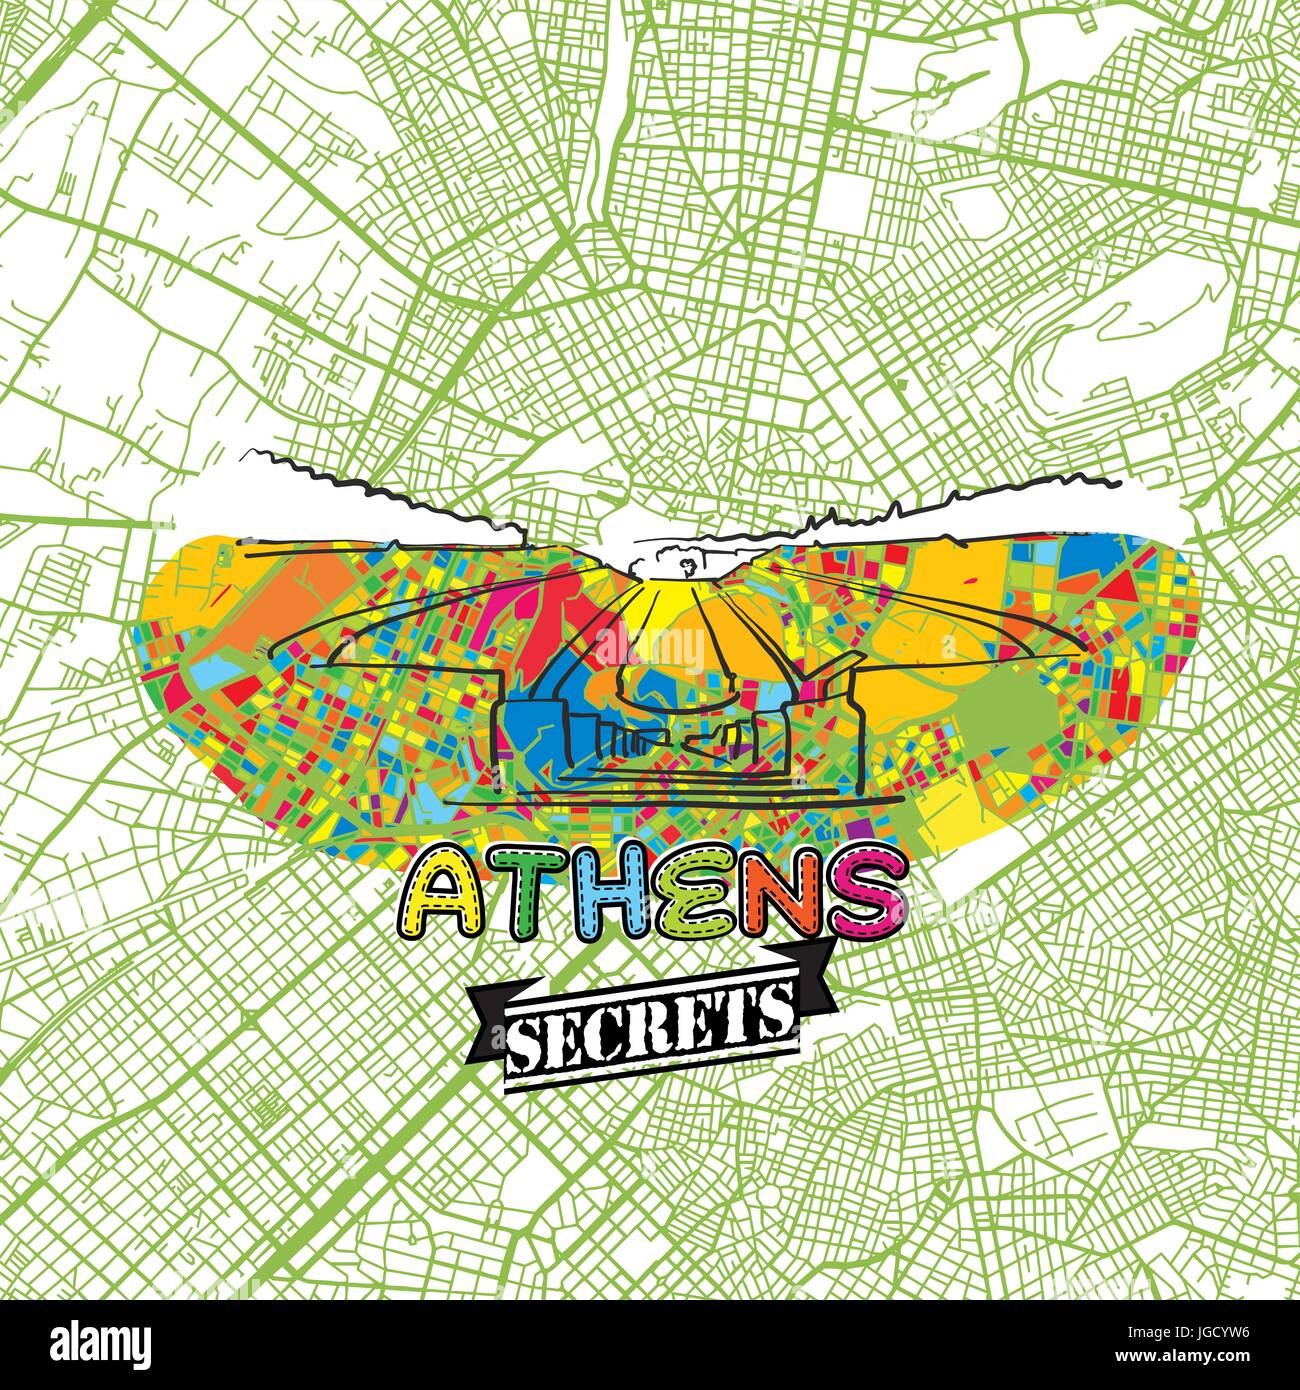 Billet d'Athènes Art Secrets Site pour la cartographie des experts et des guides de voyage. Le logo de la ville à la main, typo de badge et dessinés à la main sur le dessus de l'image vectorielle sont regroupés et Illustration de Vecteur